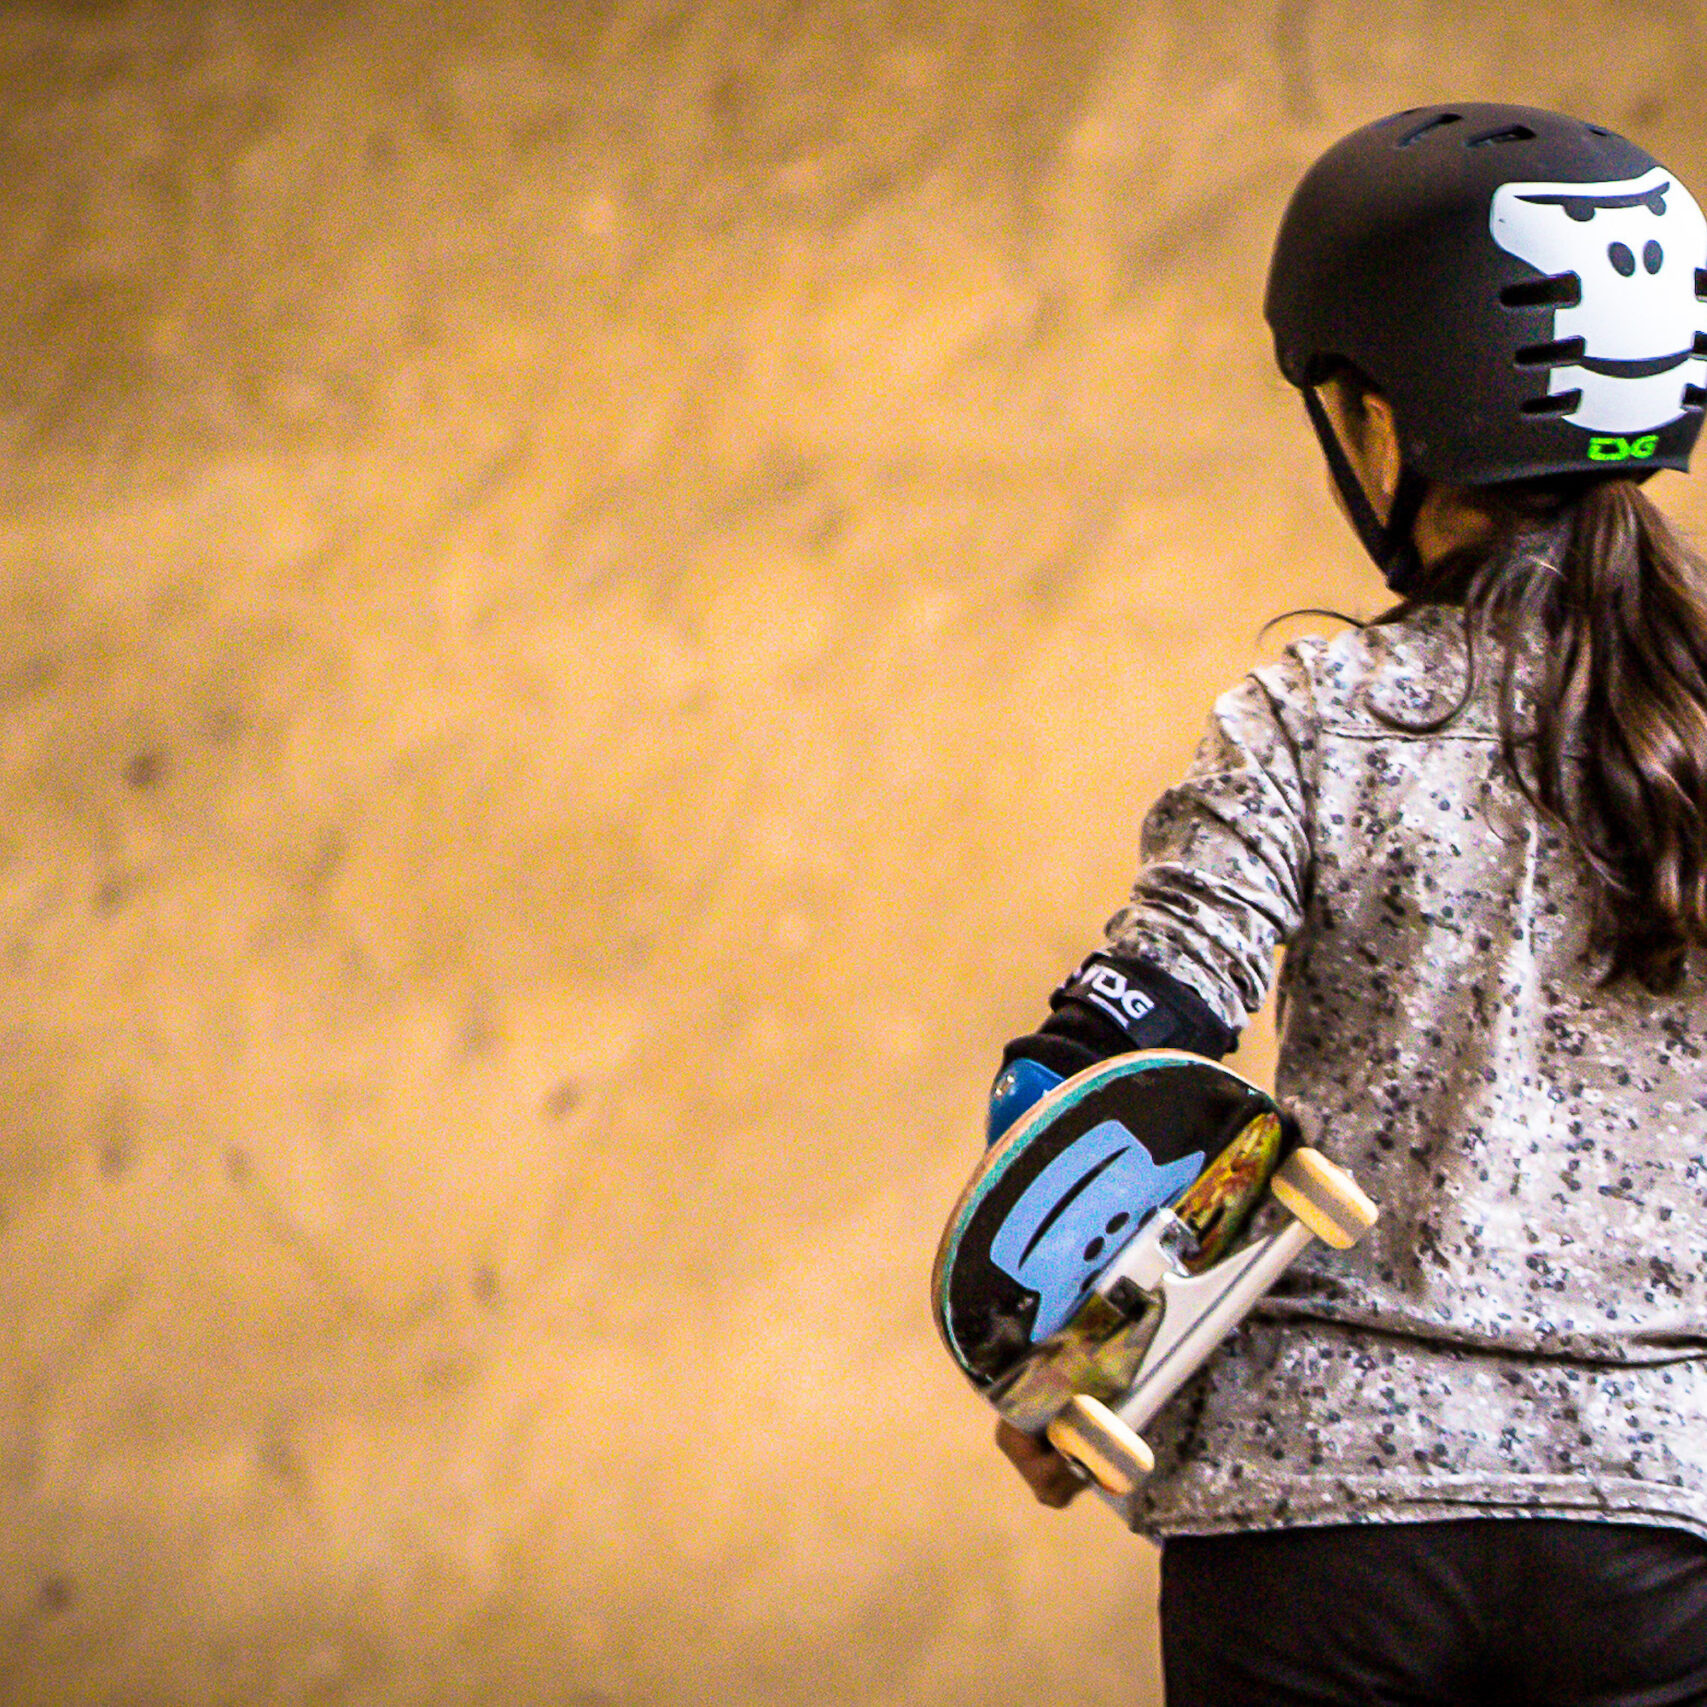 Ein Maedchen von hinten mit GORILLA Helm und Skateboard im Rahmen eines GORILLA Workshops in einem Skatepark.